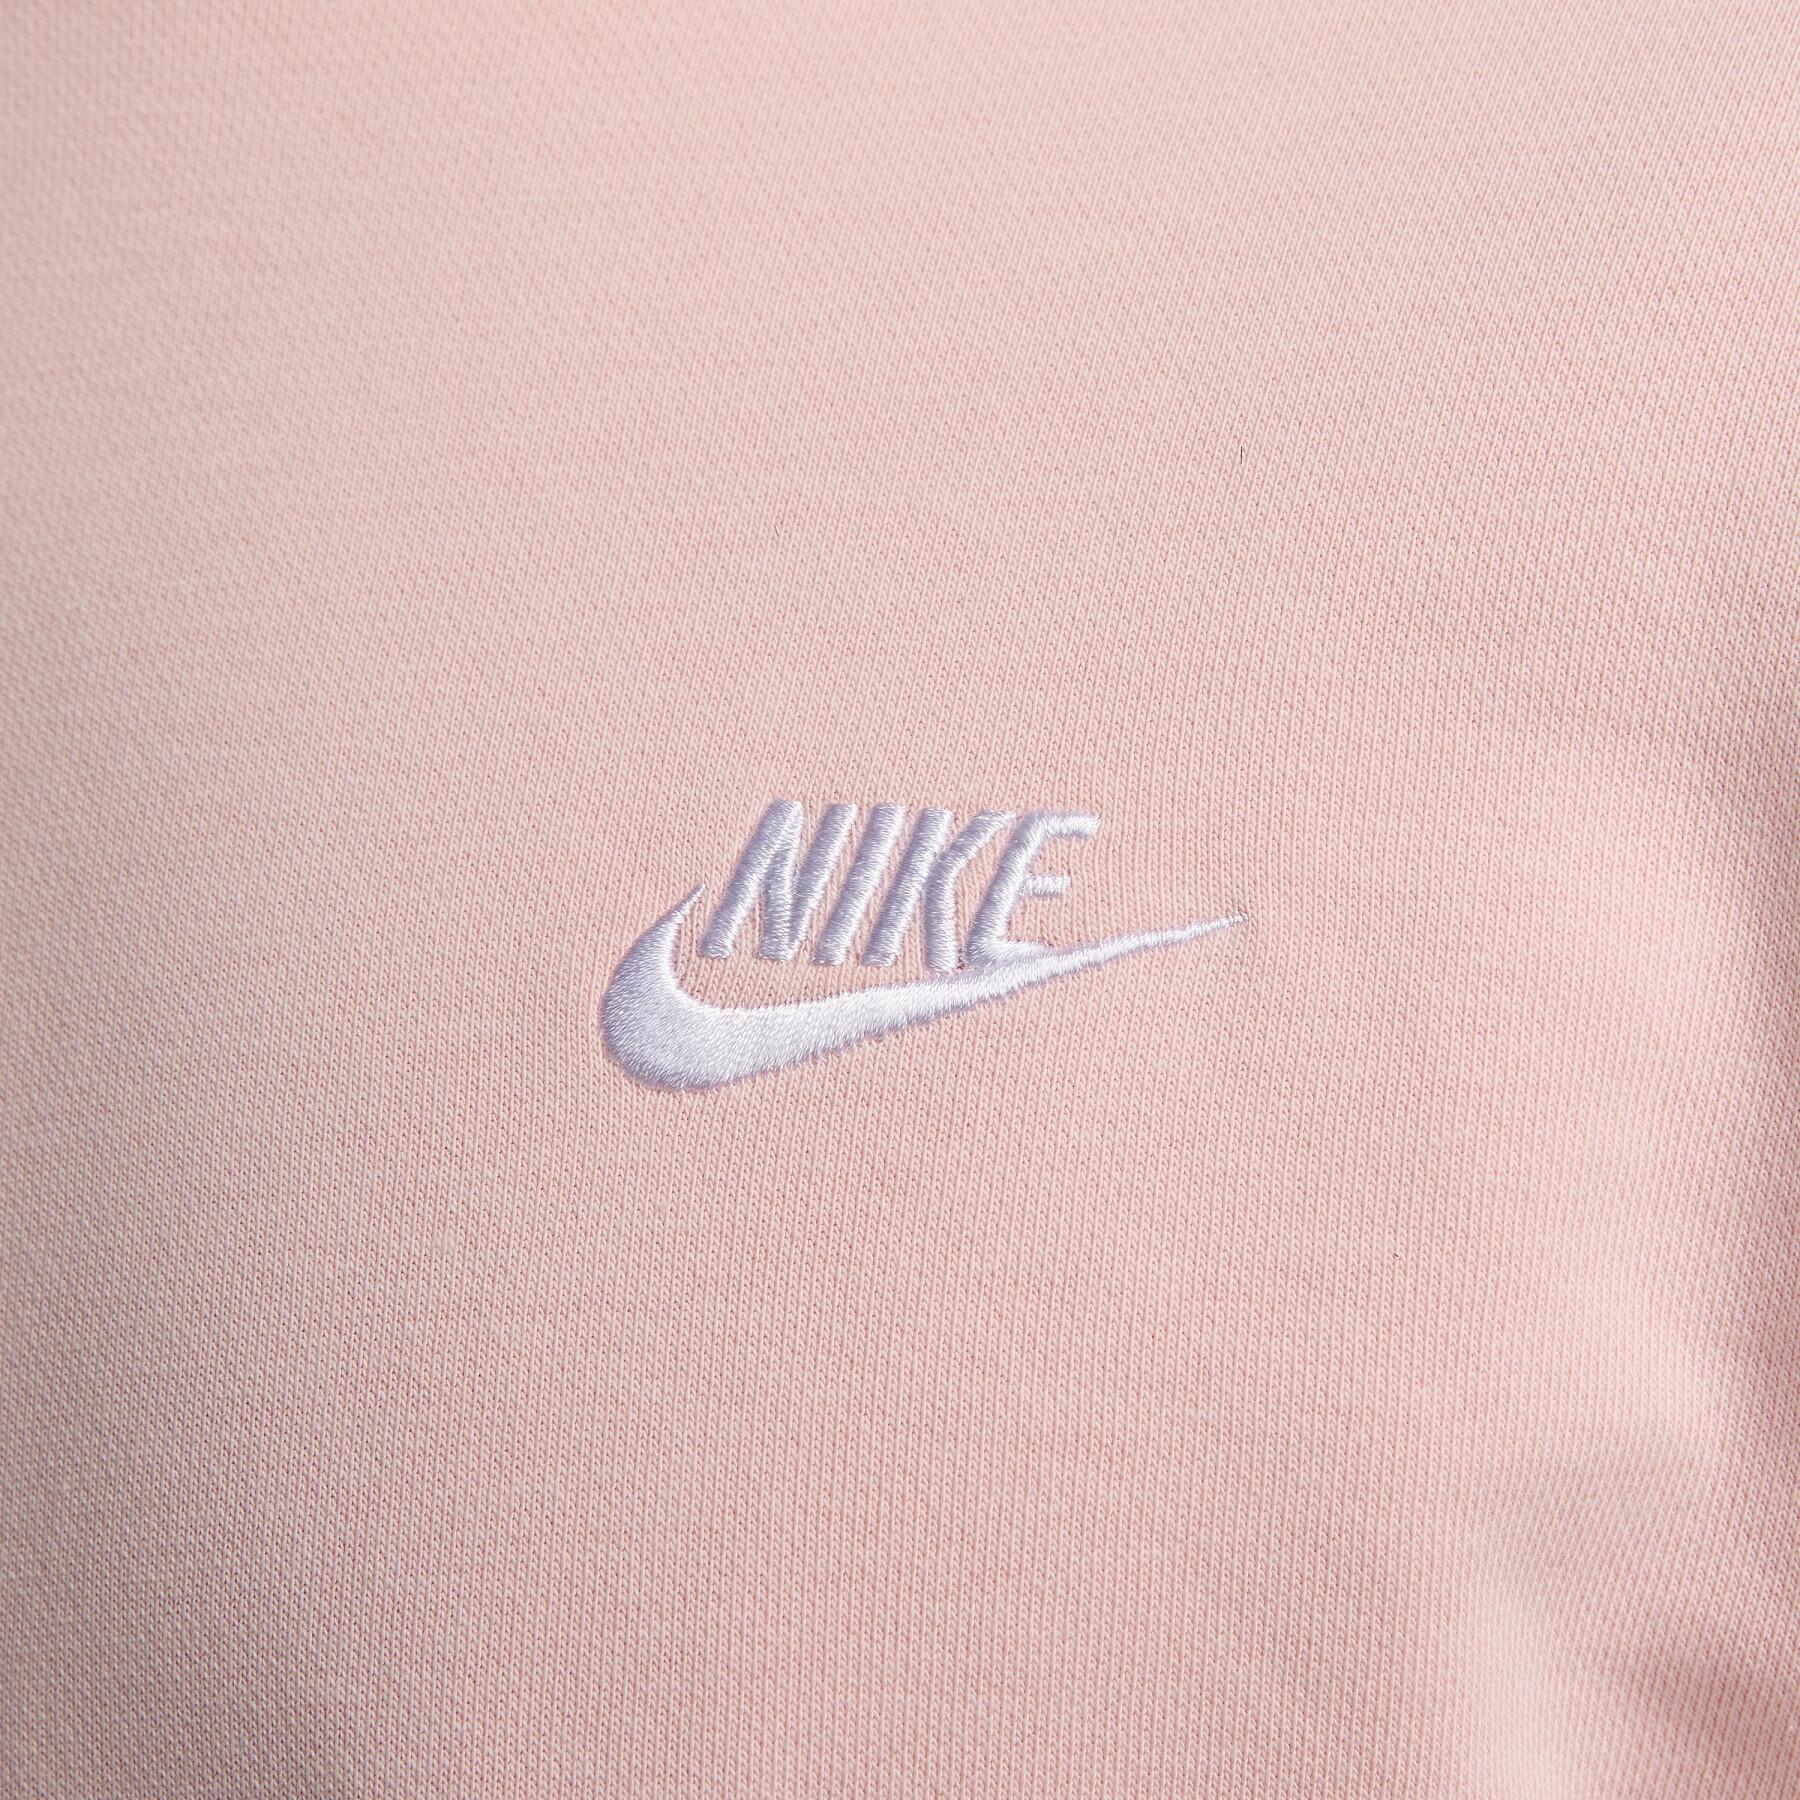 Sweatshirt encapuçado Nike Club